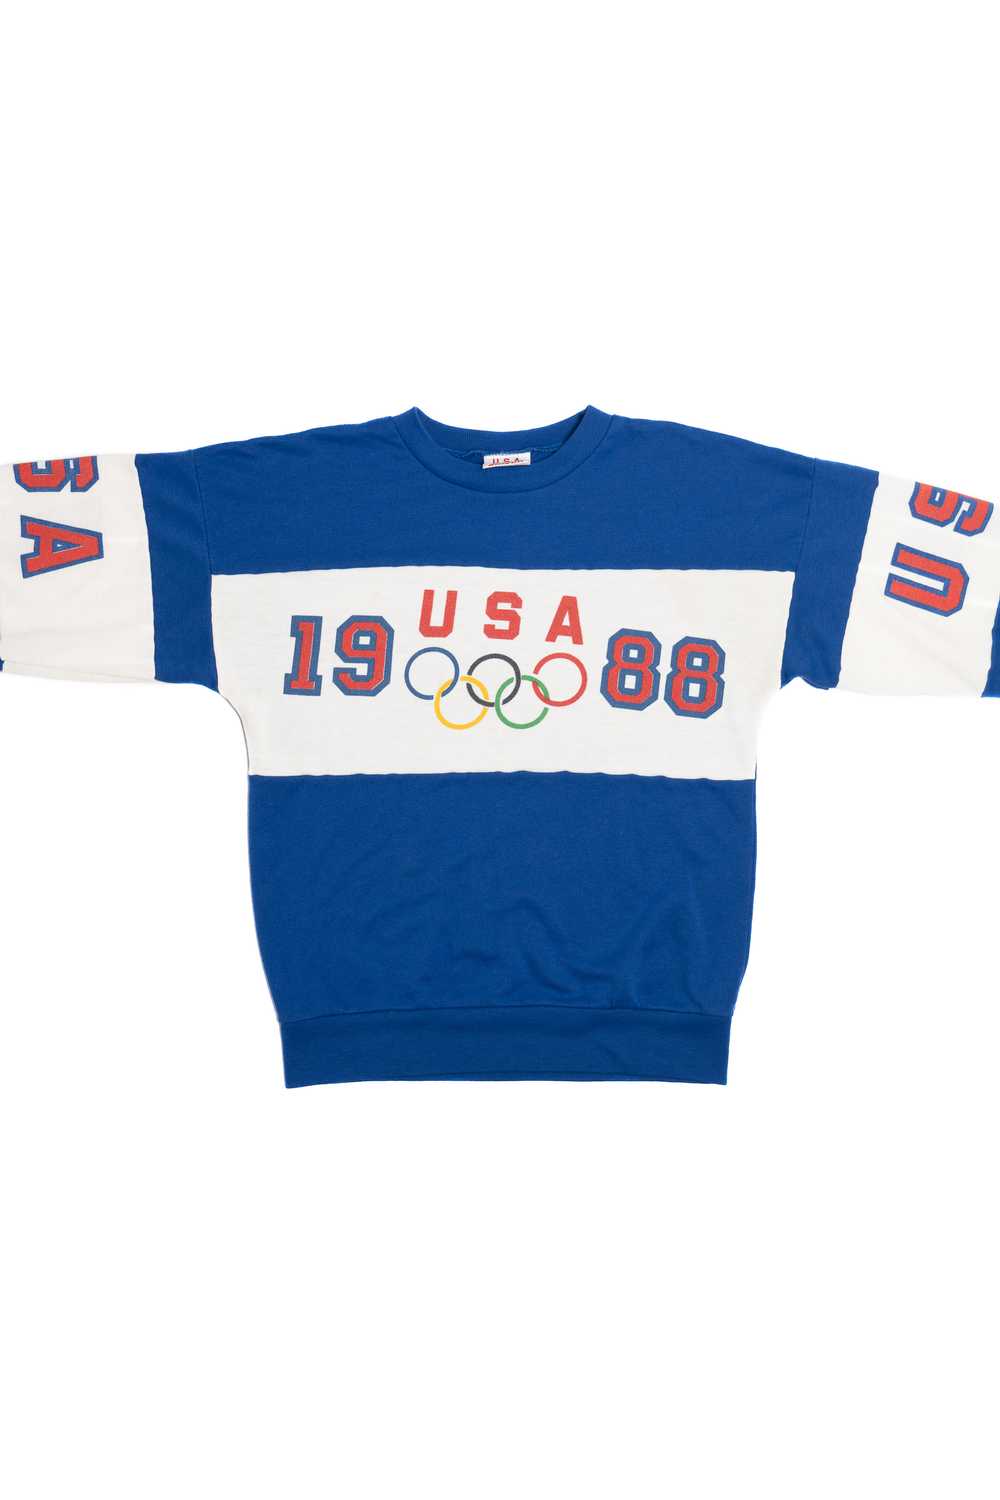 Vintage 1988 USA Olympics Sweatshirt - image 4